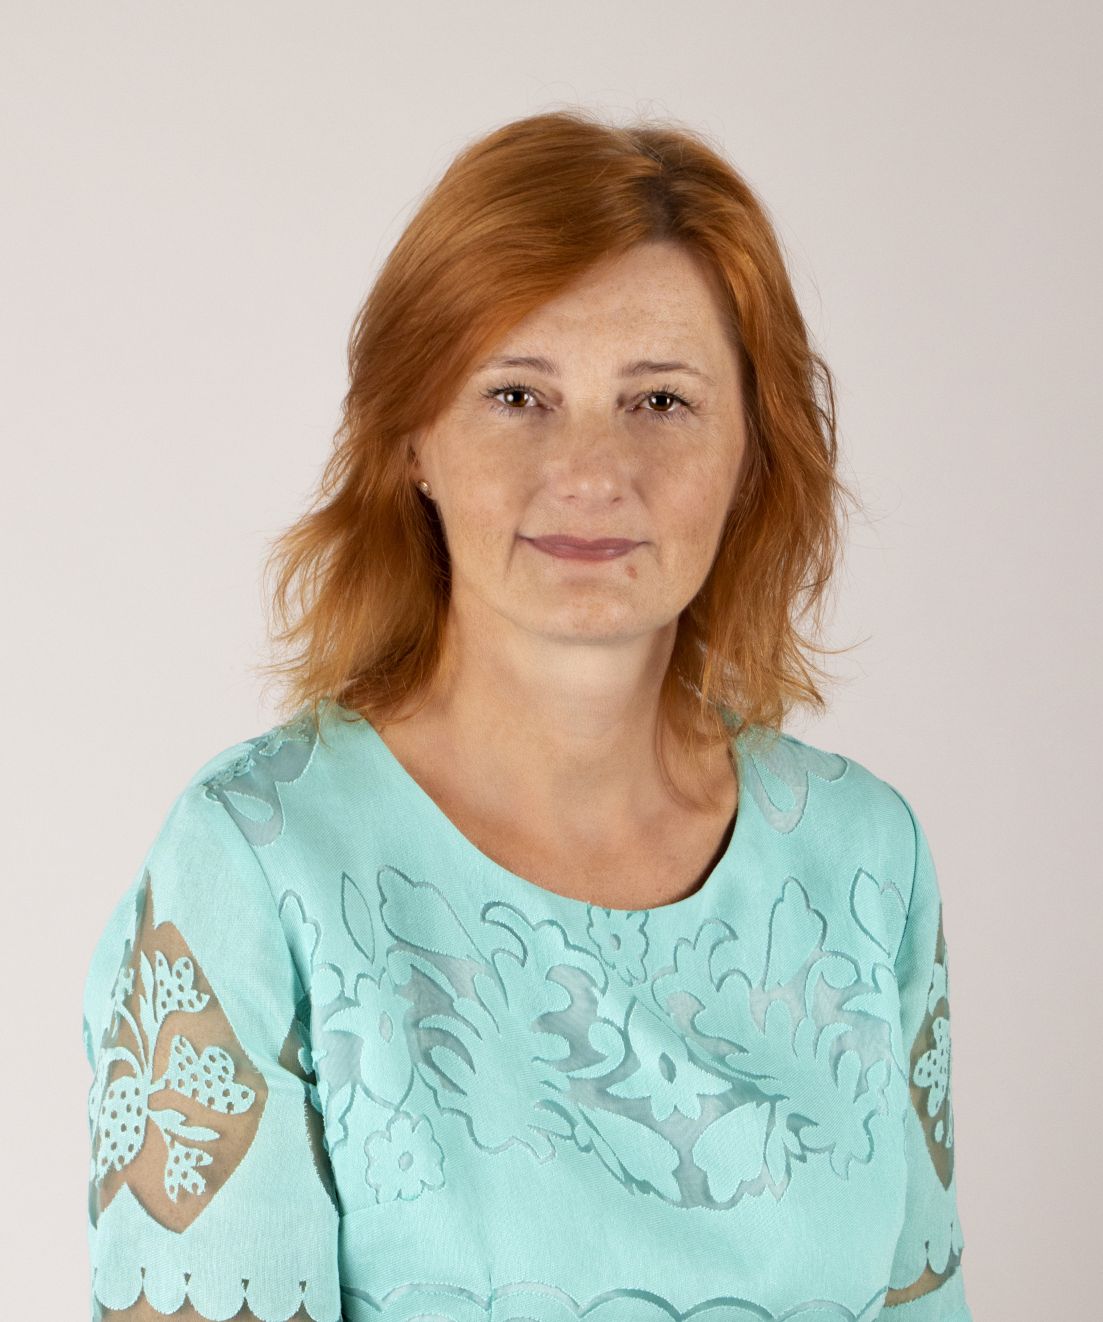 MICHÁLKOVÁ, Anna, Assoc. Prof. Dipl. Ing., PhD.